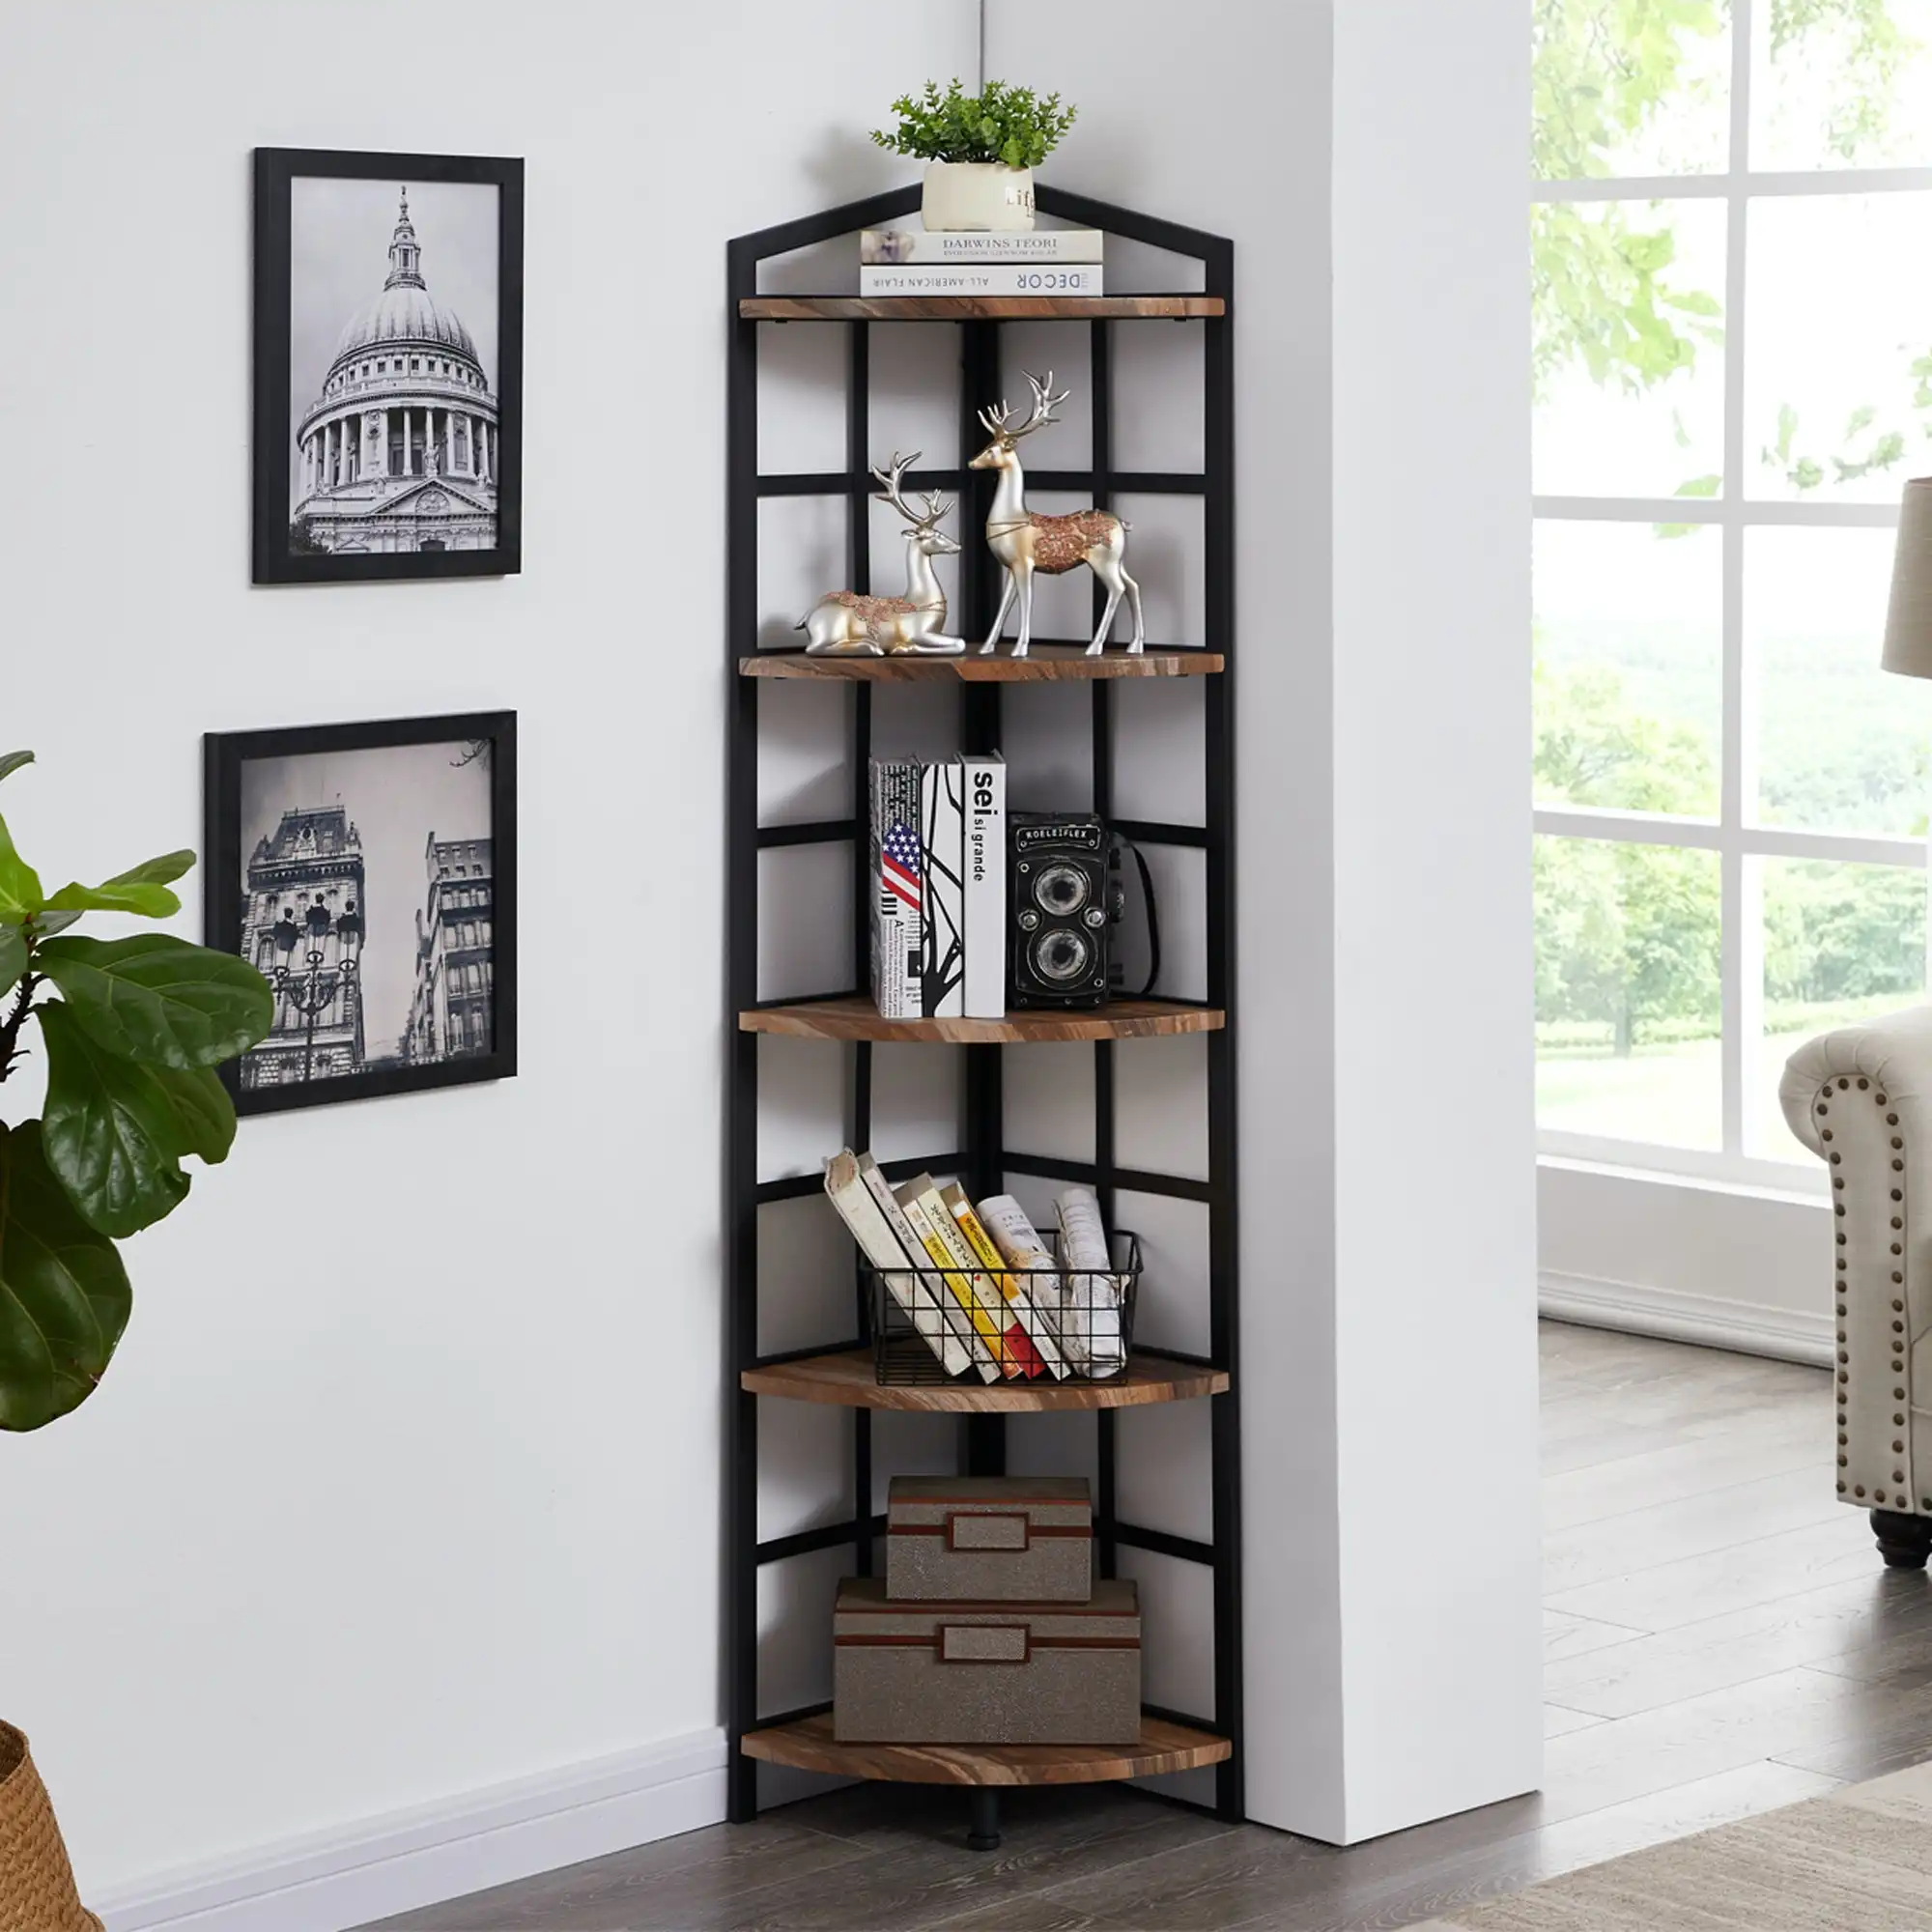 IHOMDEC 5 Tier Industrial Corner Bookshelf with Metal Frame Brown